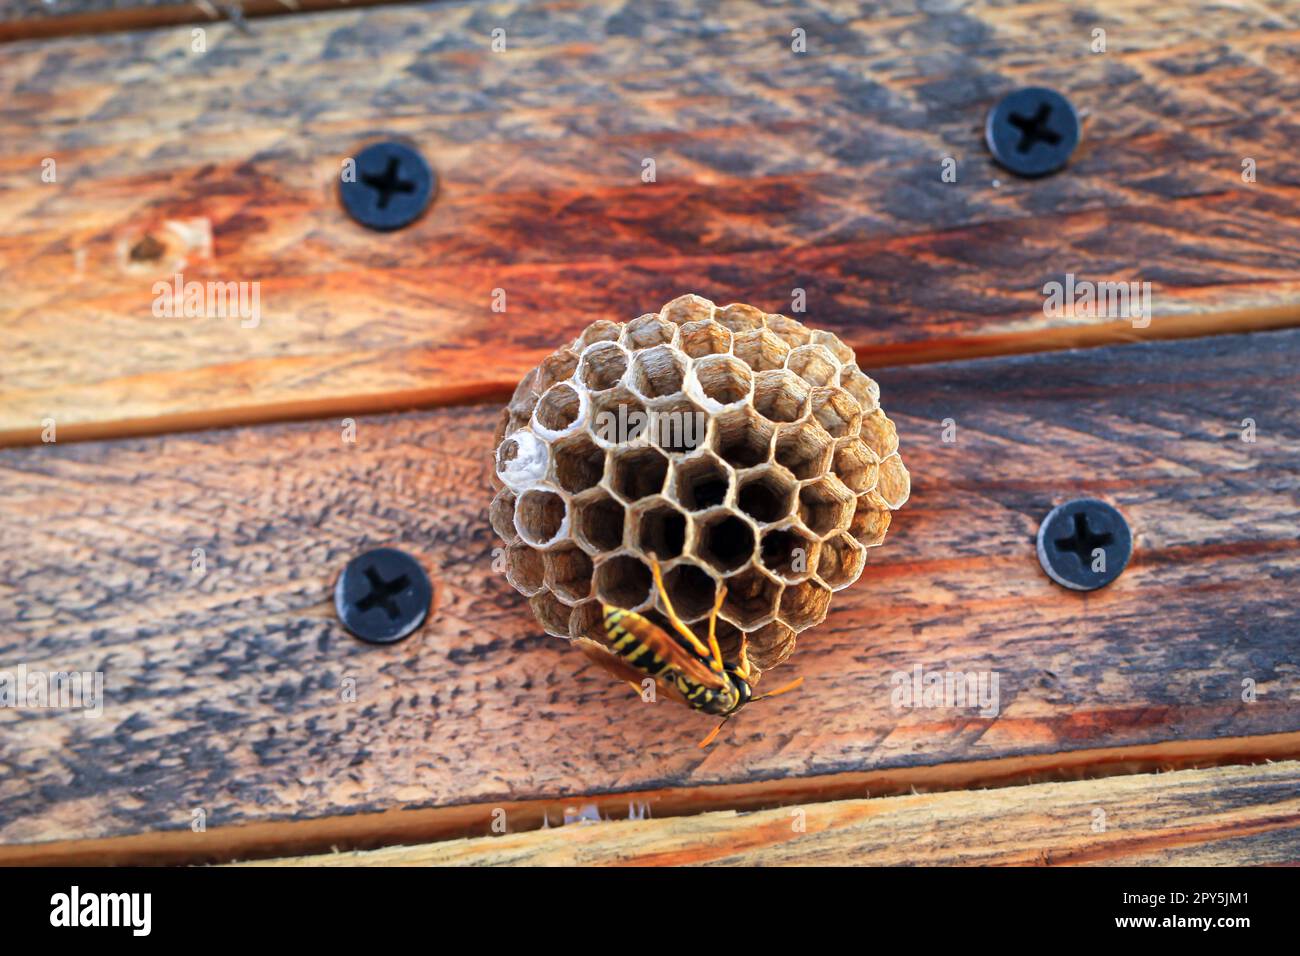 Sul coperchio di una scatola di legno le vespe hanno costruito un piccolo nido. Foto Stock